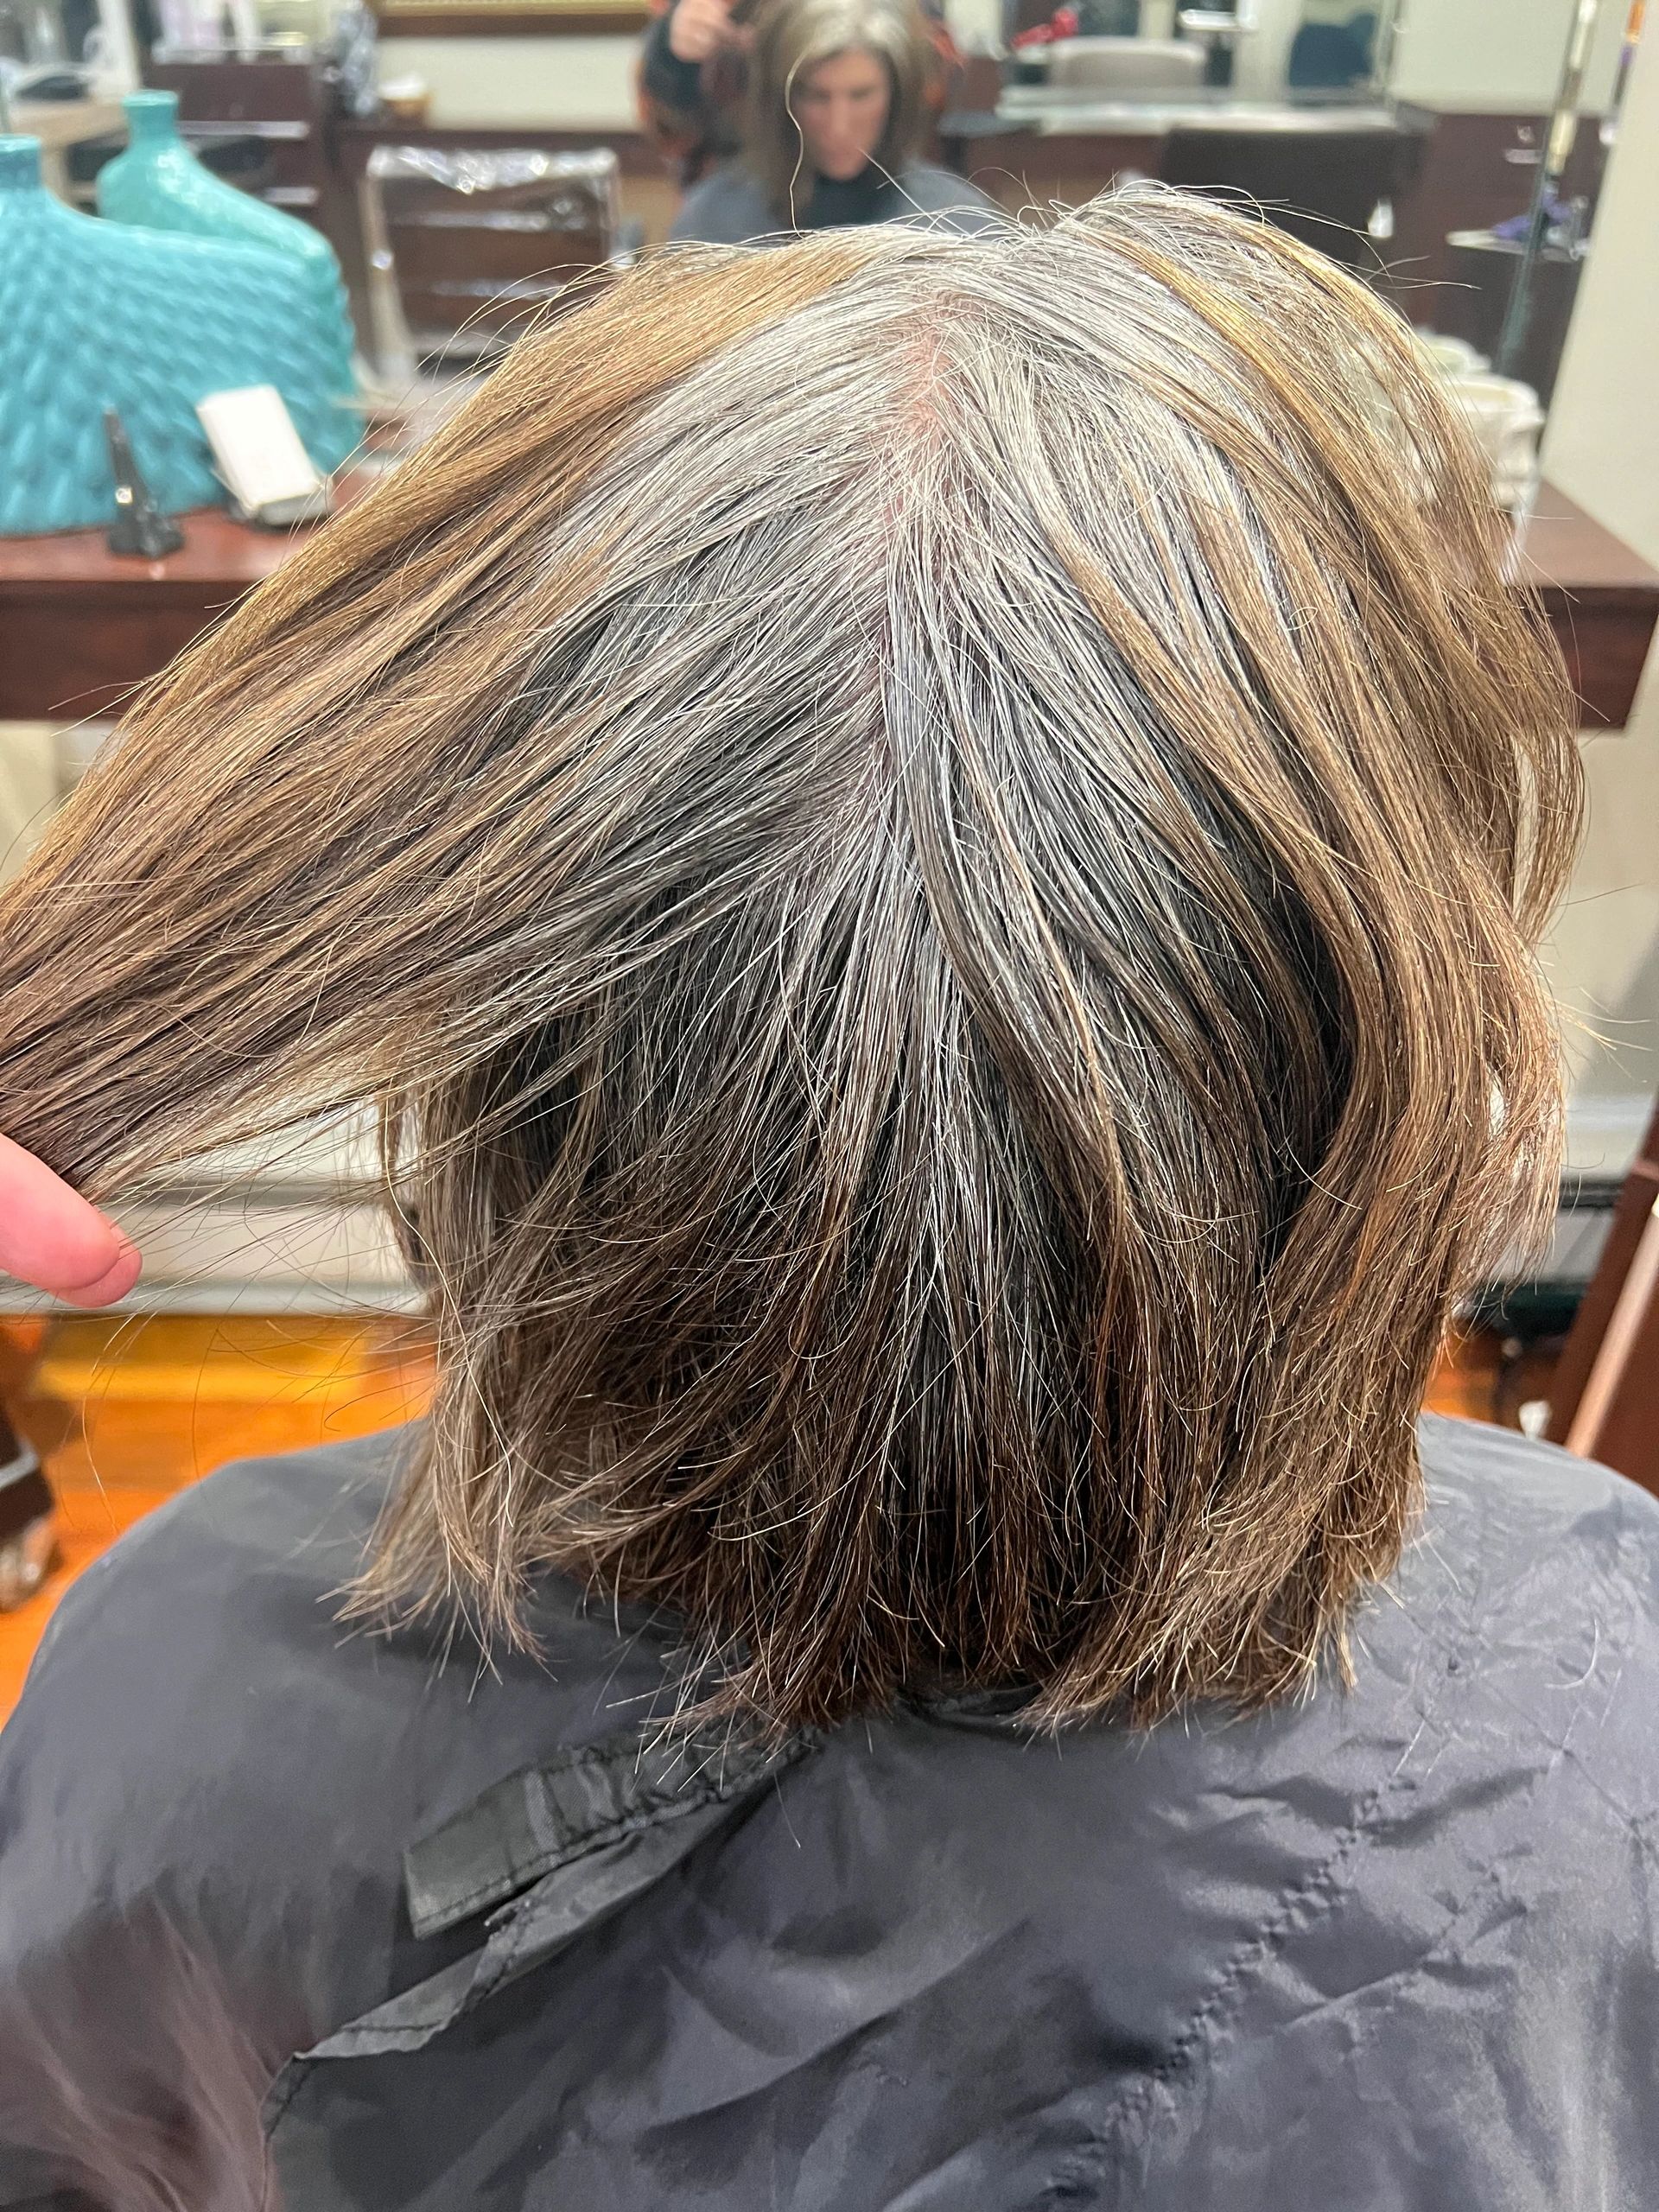 Mens Haircut In Philadelphia - Blog - Andre Richard Salon